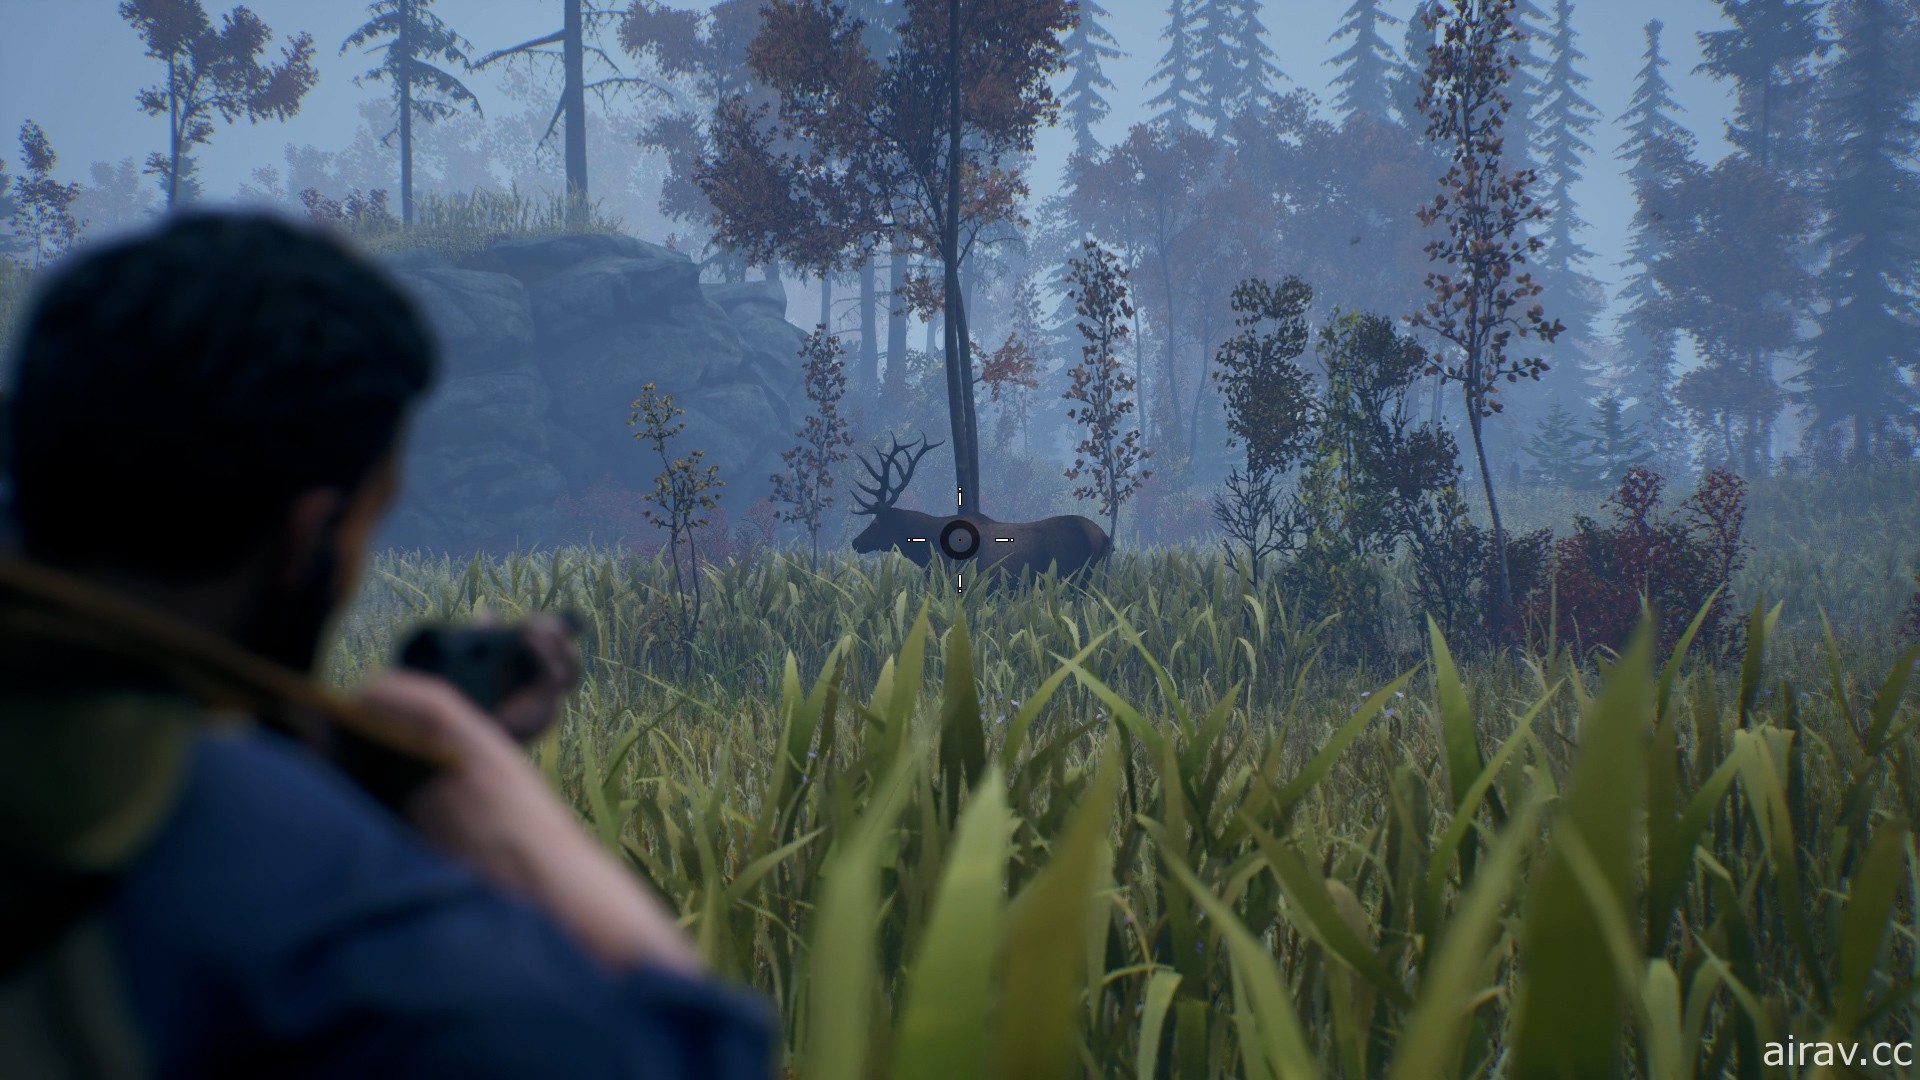 荒野生存冒險新作《遼闊荒野》釋出野外求生預告影片 遊戲 6 月初發售